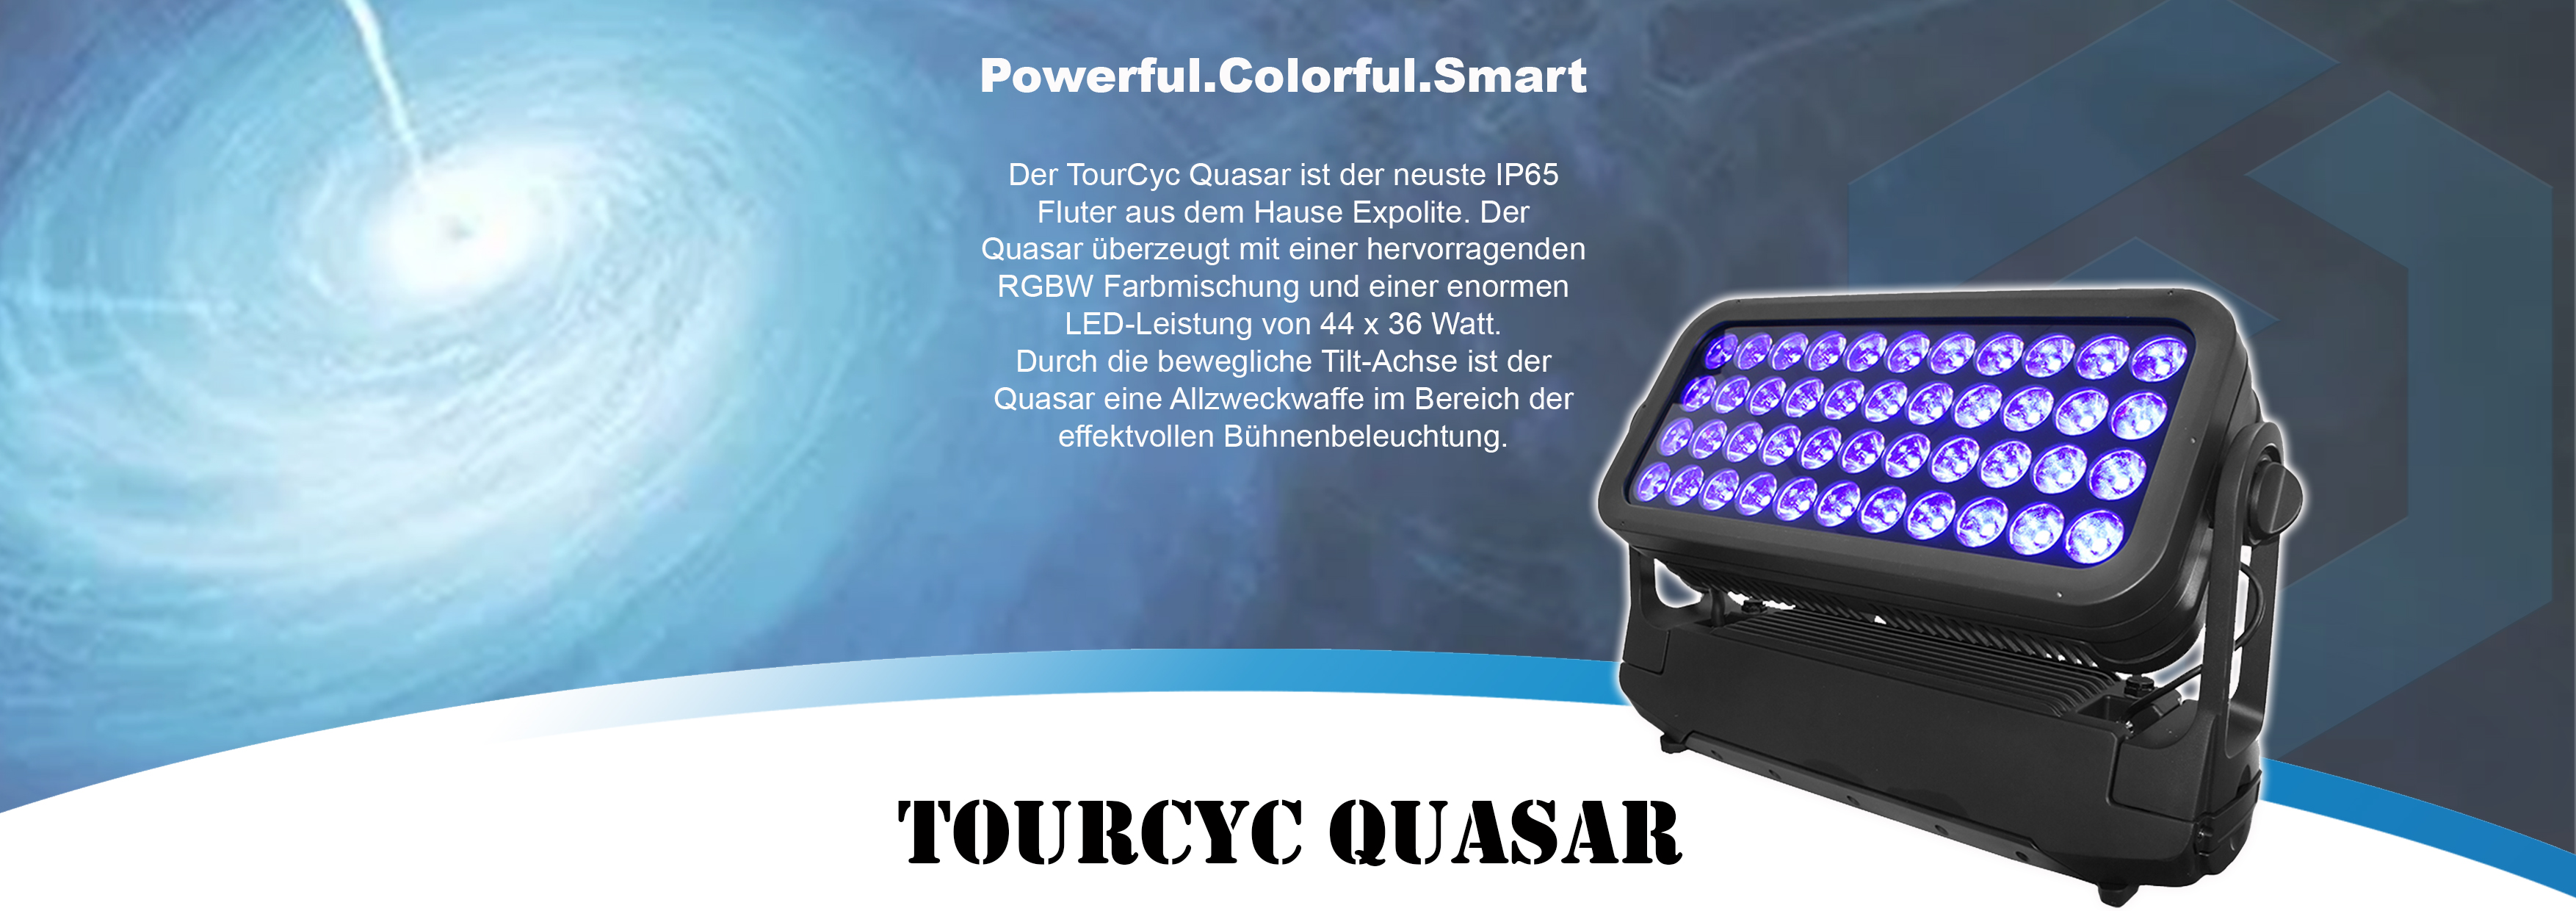  Powerful.Colorful.Smart Der TourCyc Quasar ist der neuste IP65 Fluter aus dem Hause Expolite. Der Quasar überzeugt mit einer hervorragenden RGBW Farbmischung und einer enormen LED-Leistung von 44 x 36 Watt. Durch die bewegliche Tilt-Achse ist der Quasar eine Allzweckwaffe im Bereich der effektvollen Bühnenbeleuchtung.